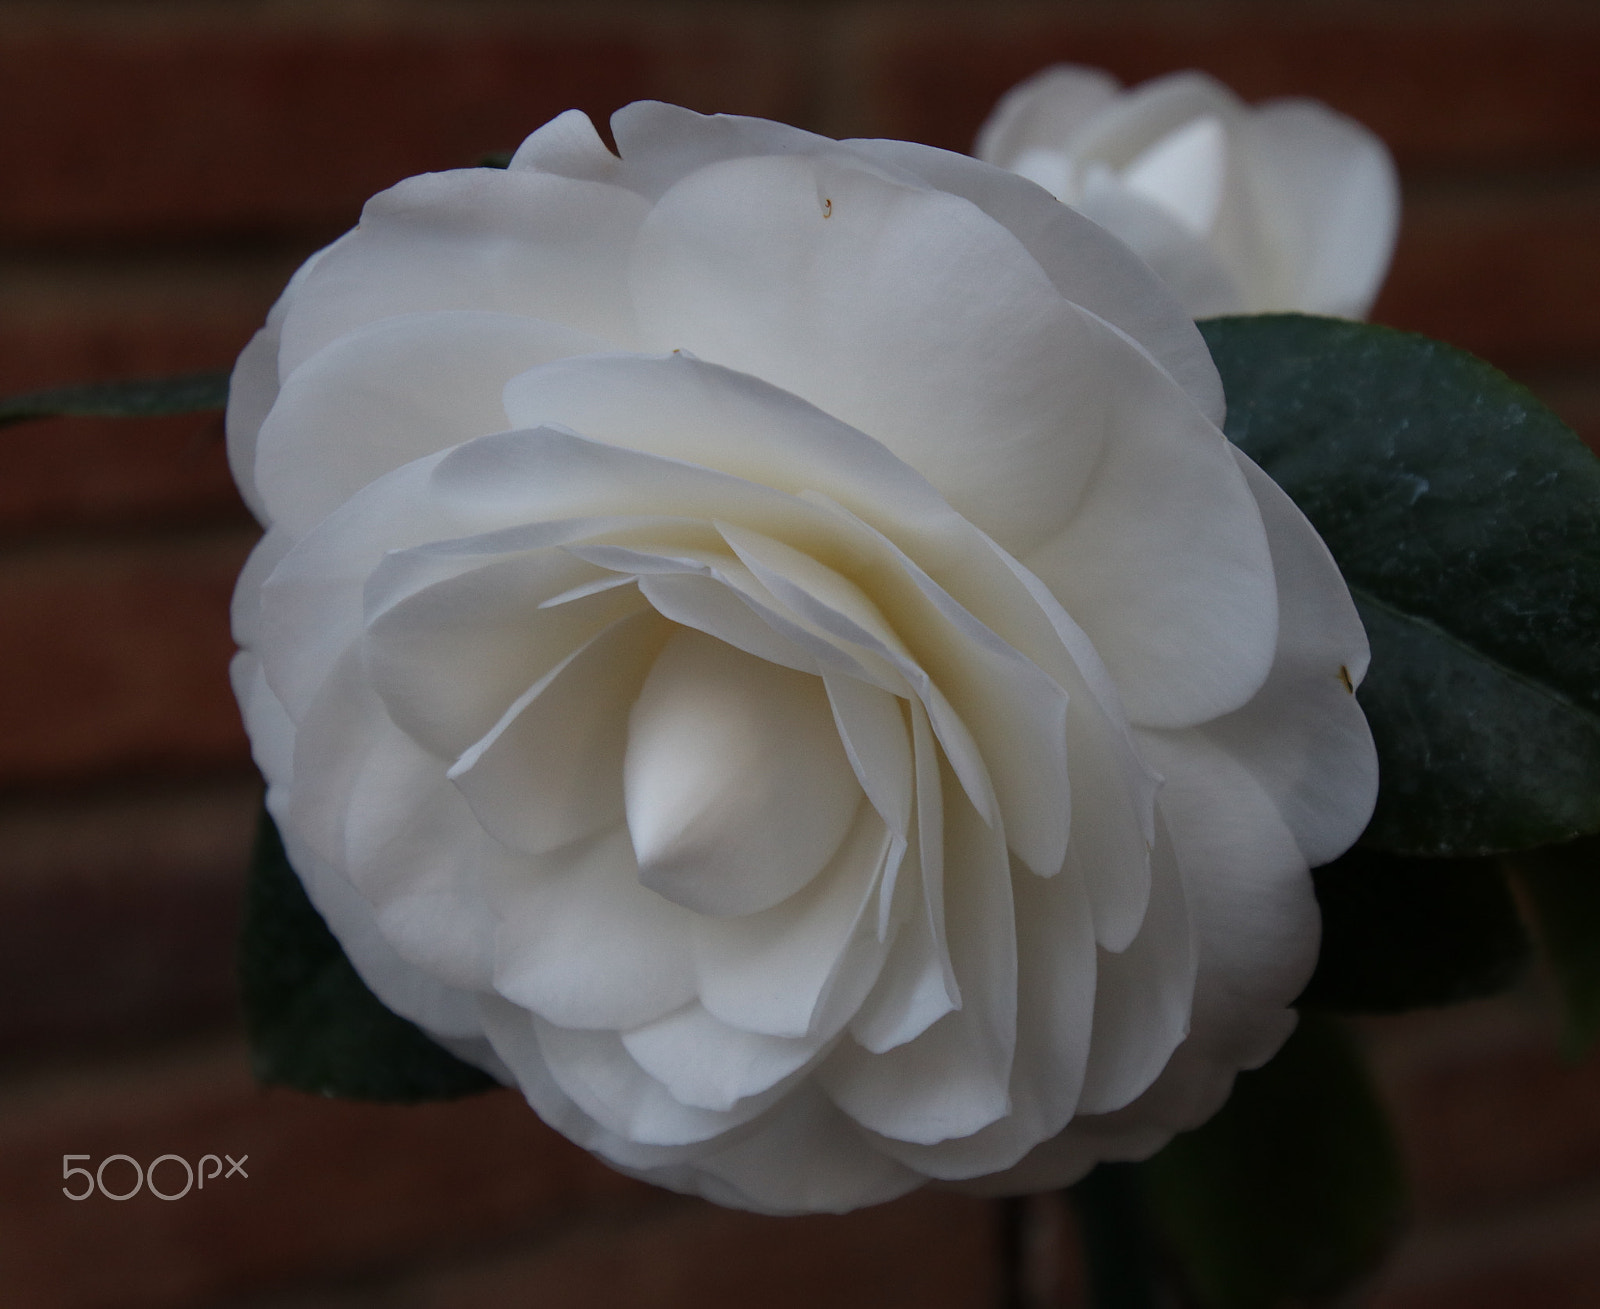 Canon EOS 80D sample photo. Camellia photography